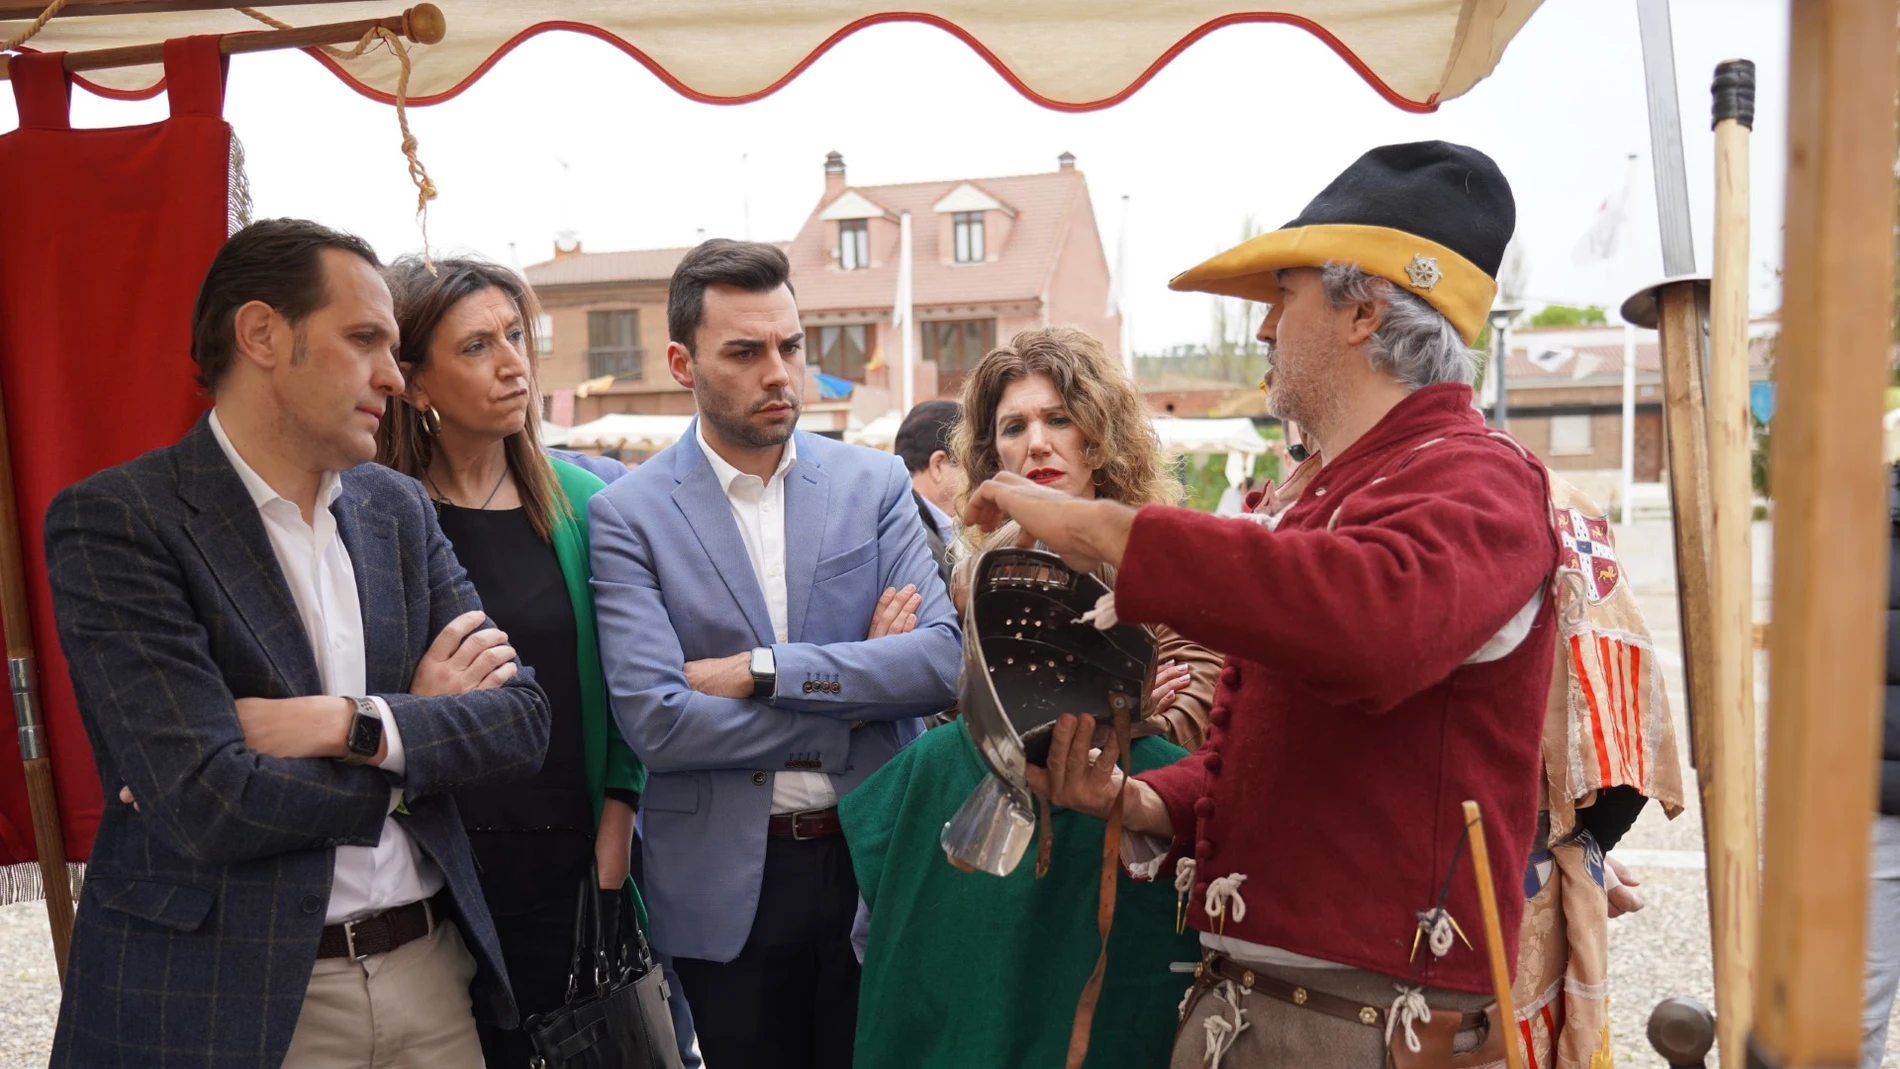 El presidente de la Diputación de Valladolid, Conrado Íscar, visita el mercado medieval de Fuensaldaña